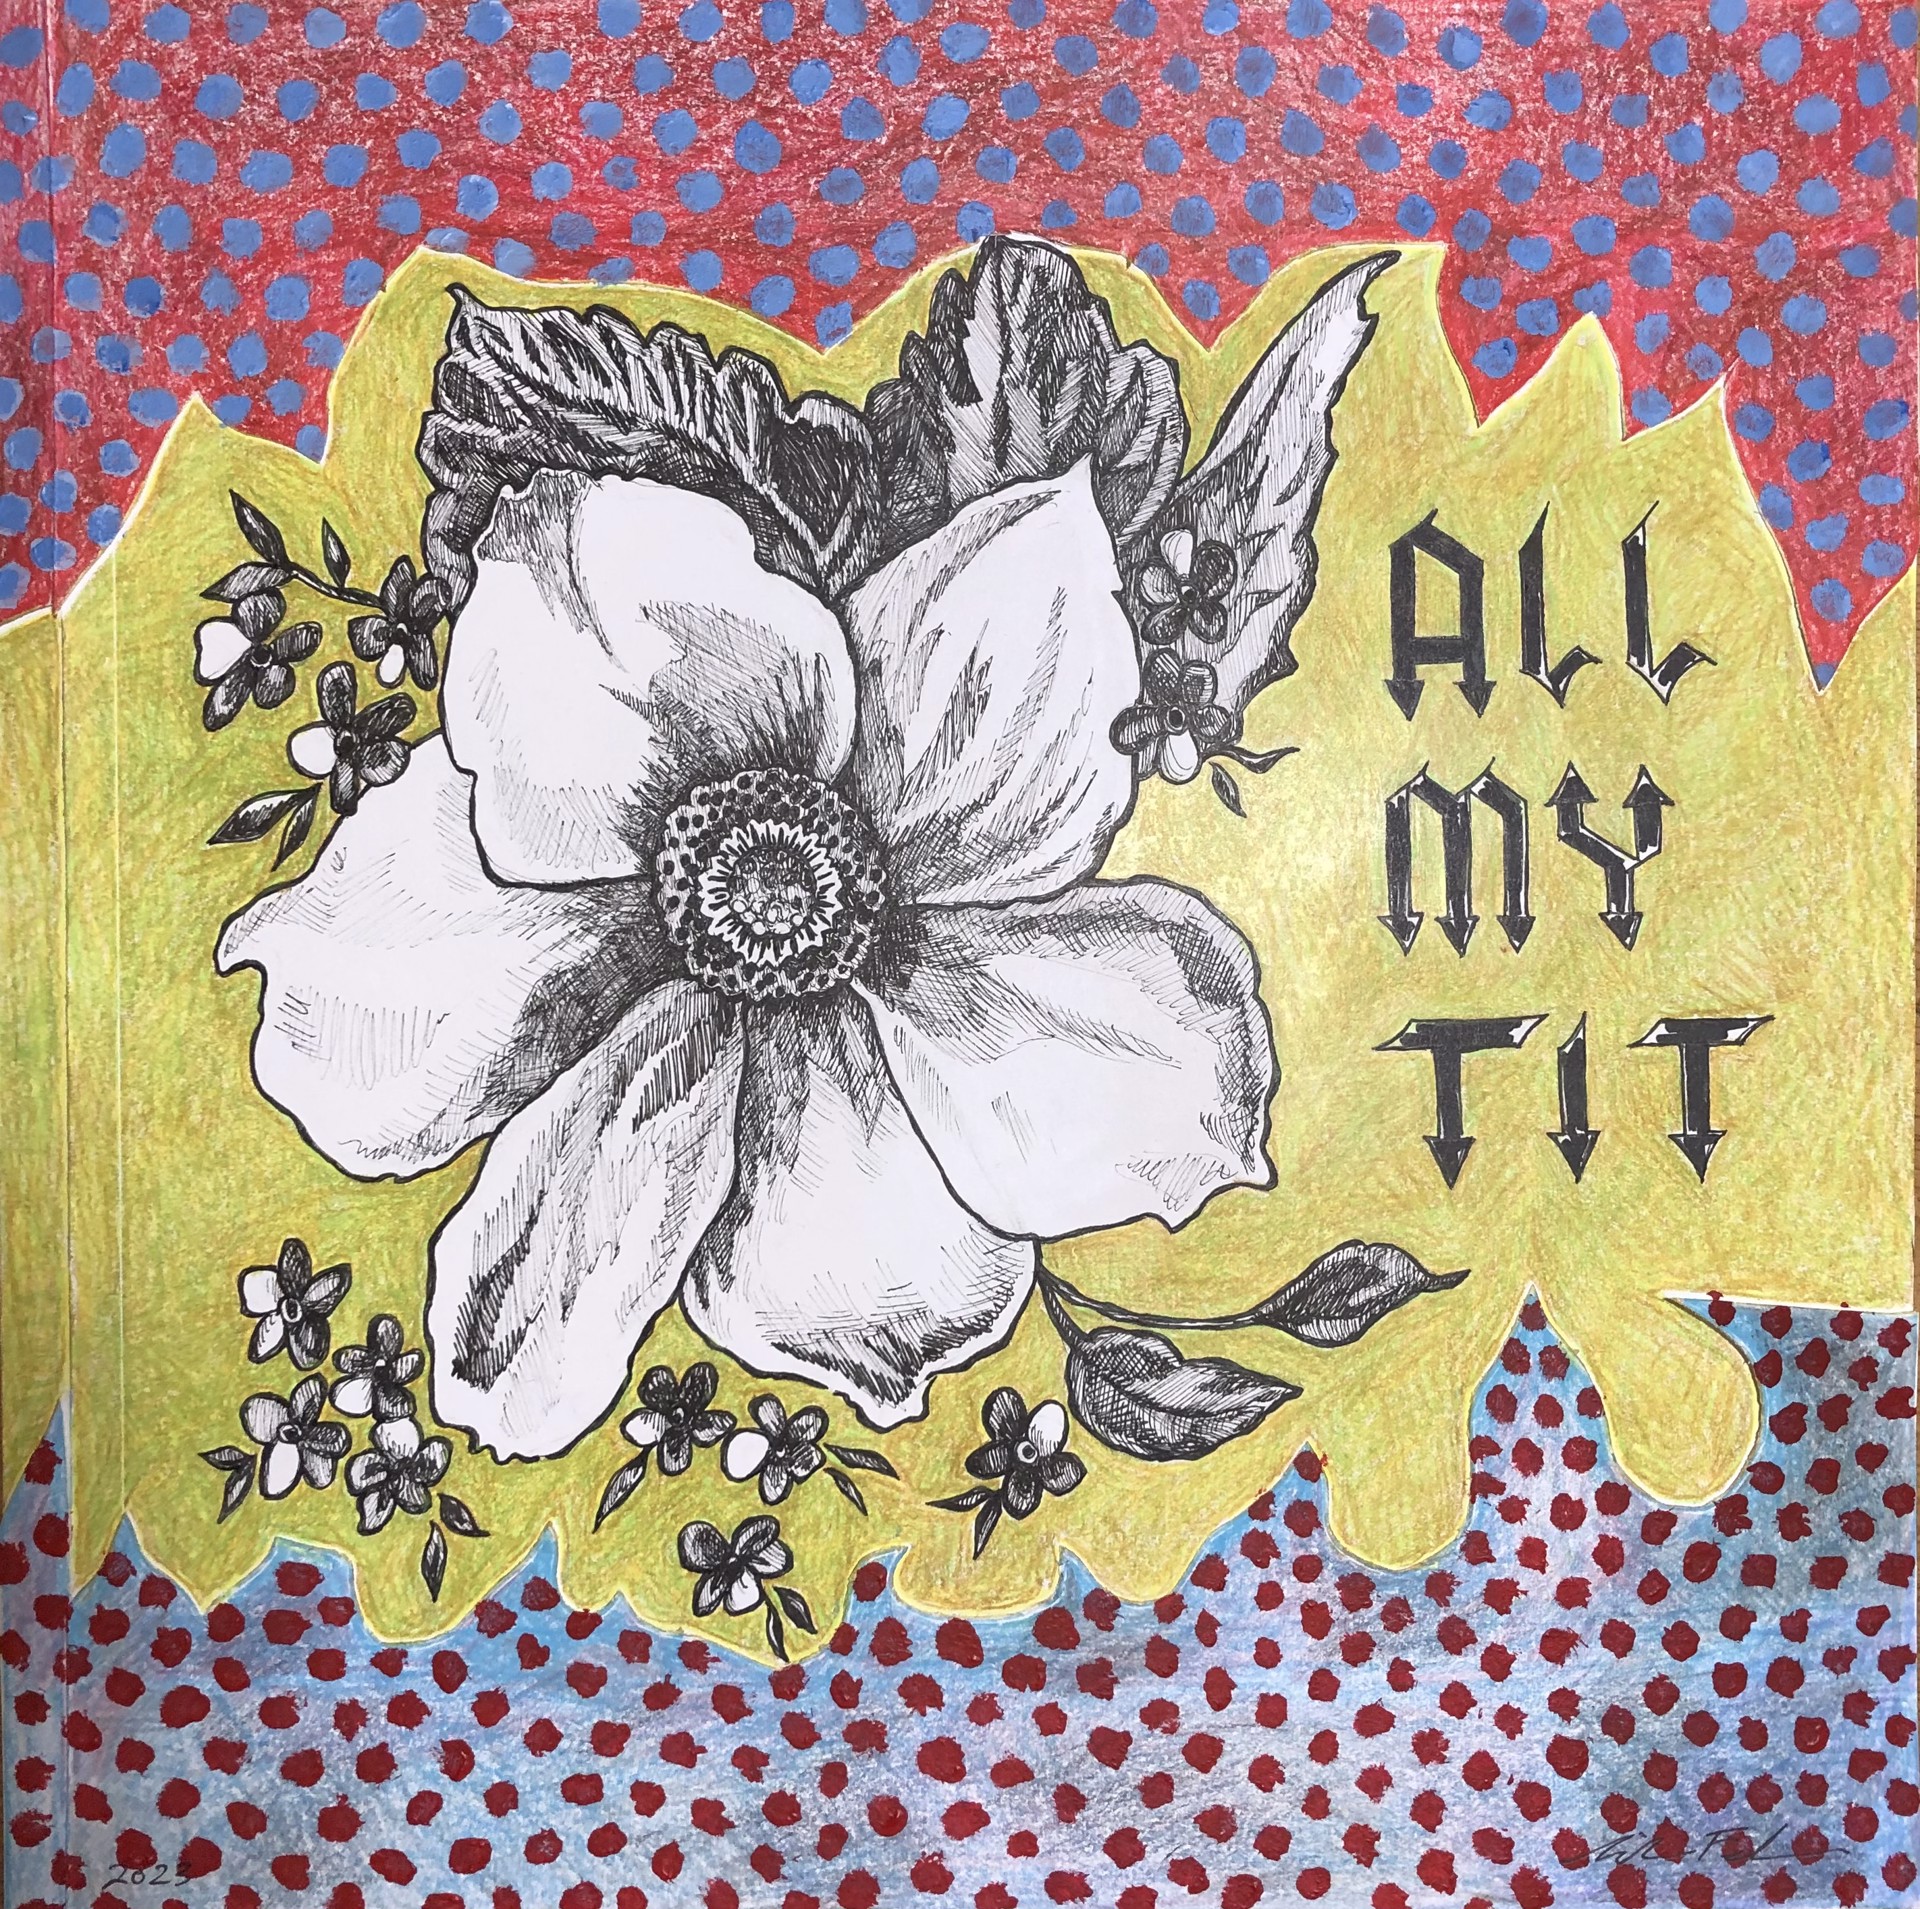 All My Tit III by Nika Feldman